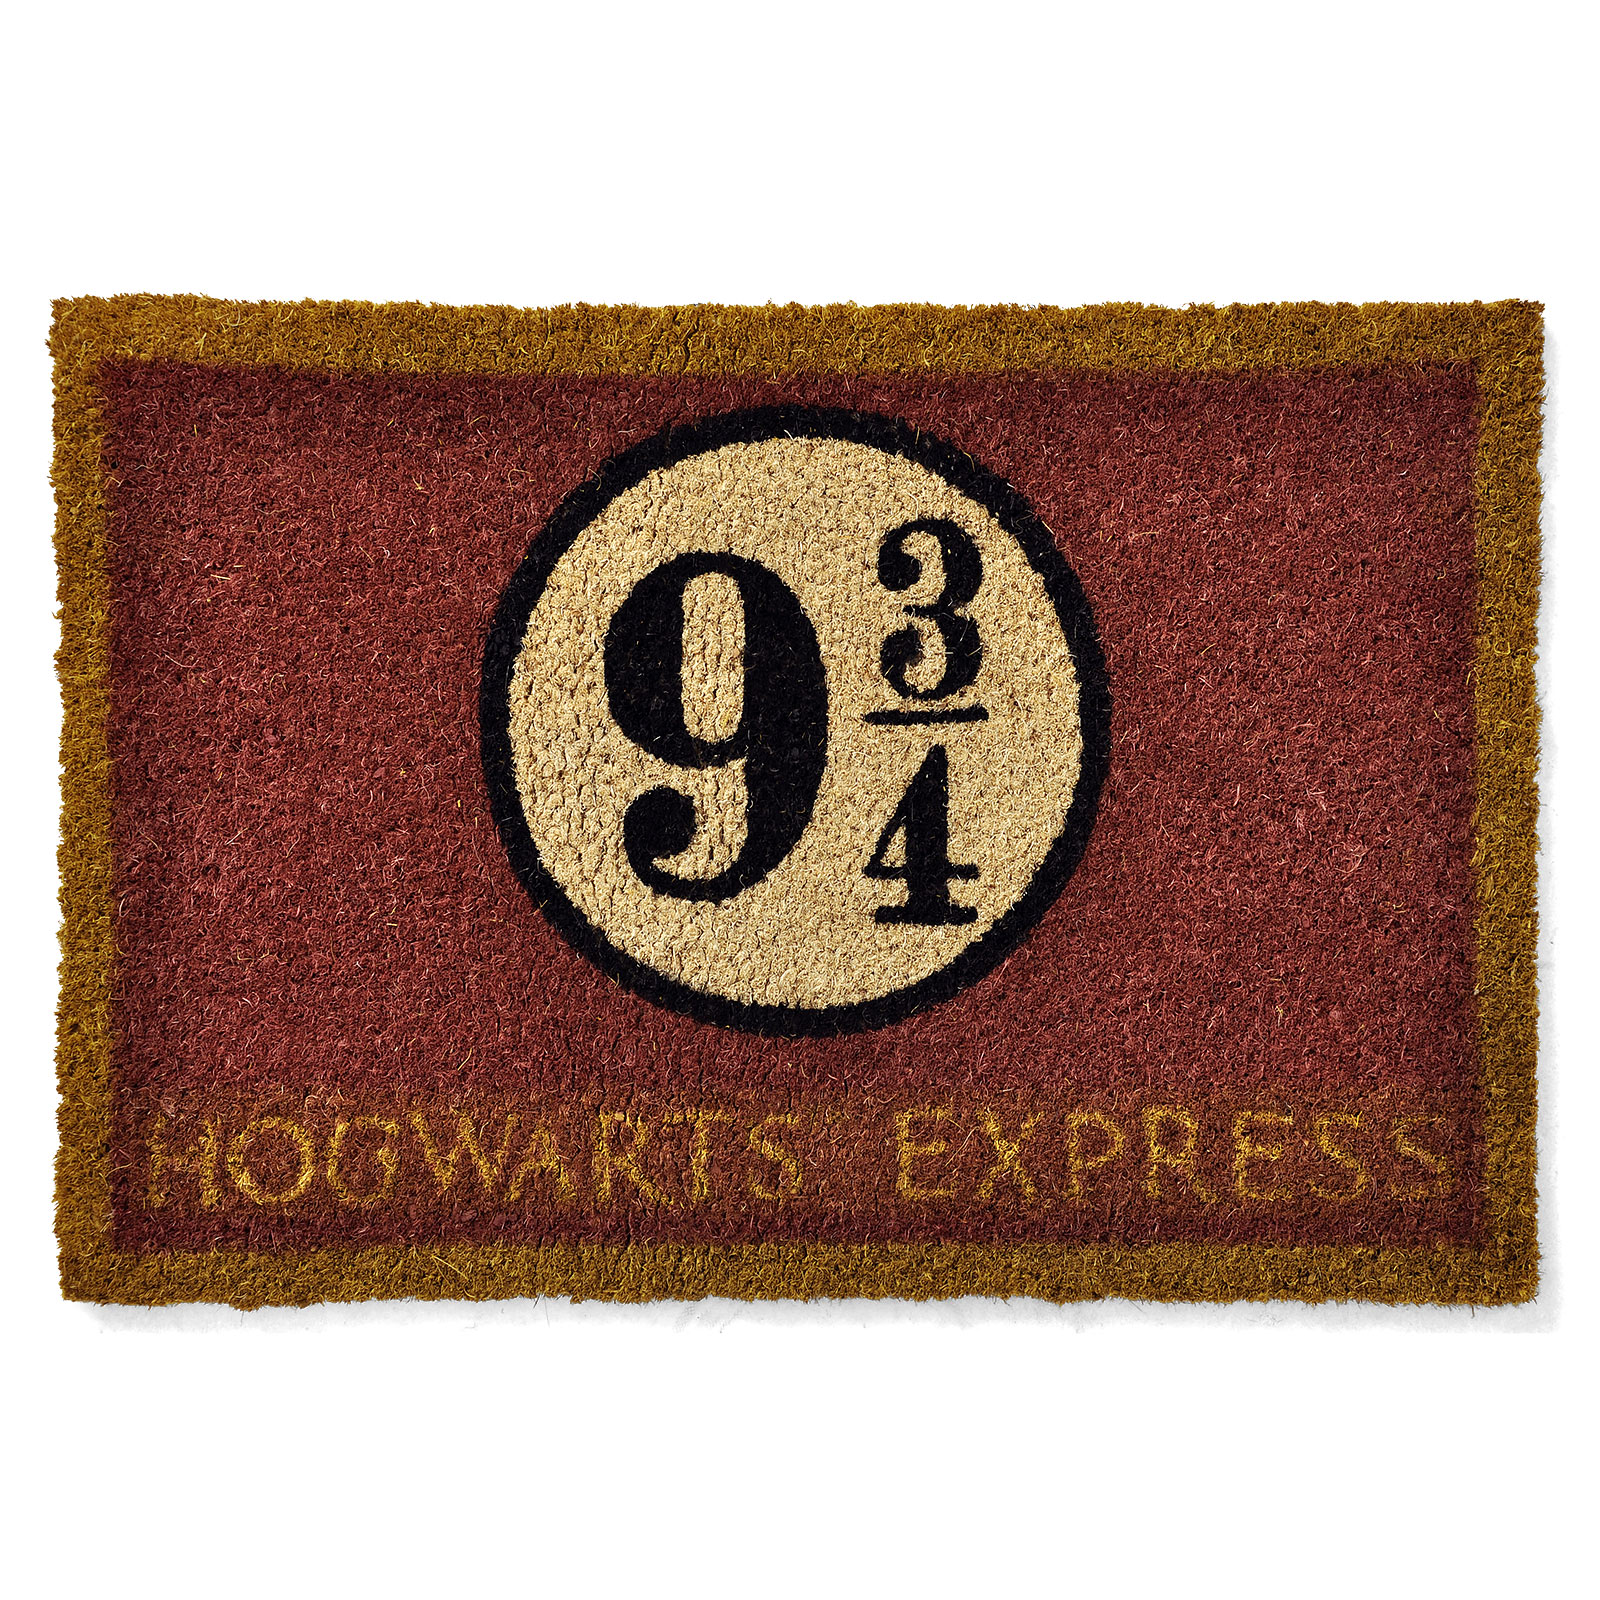 Harry Potter - 9 3/4 Hogwarts Express Fußmatte